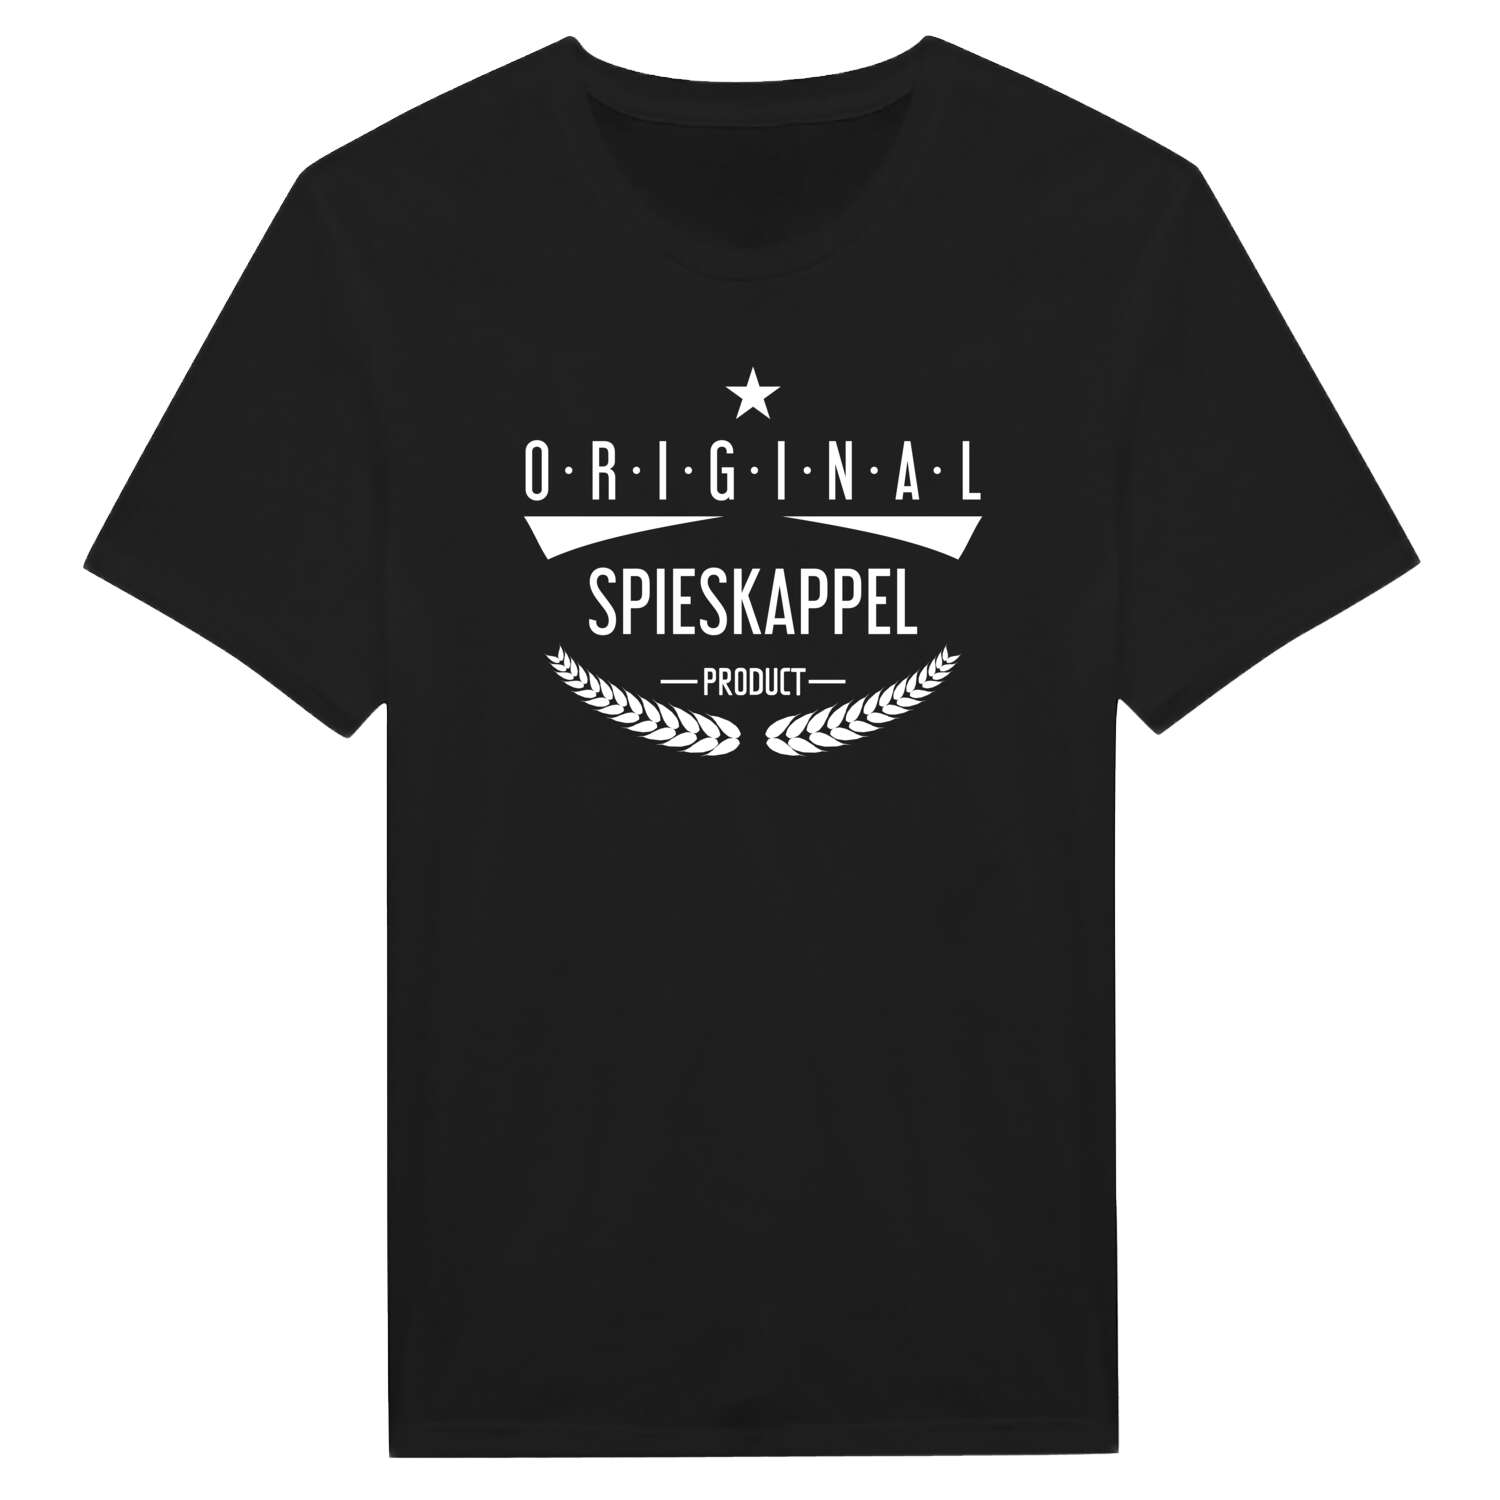 Spieskappel T-Shirt »Original Product«